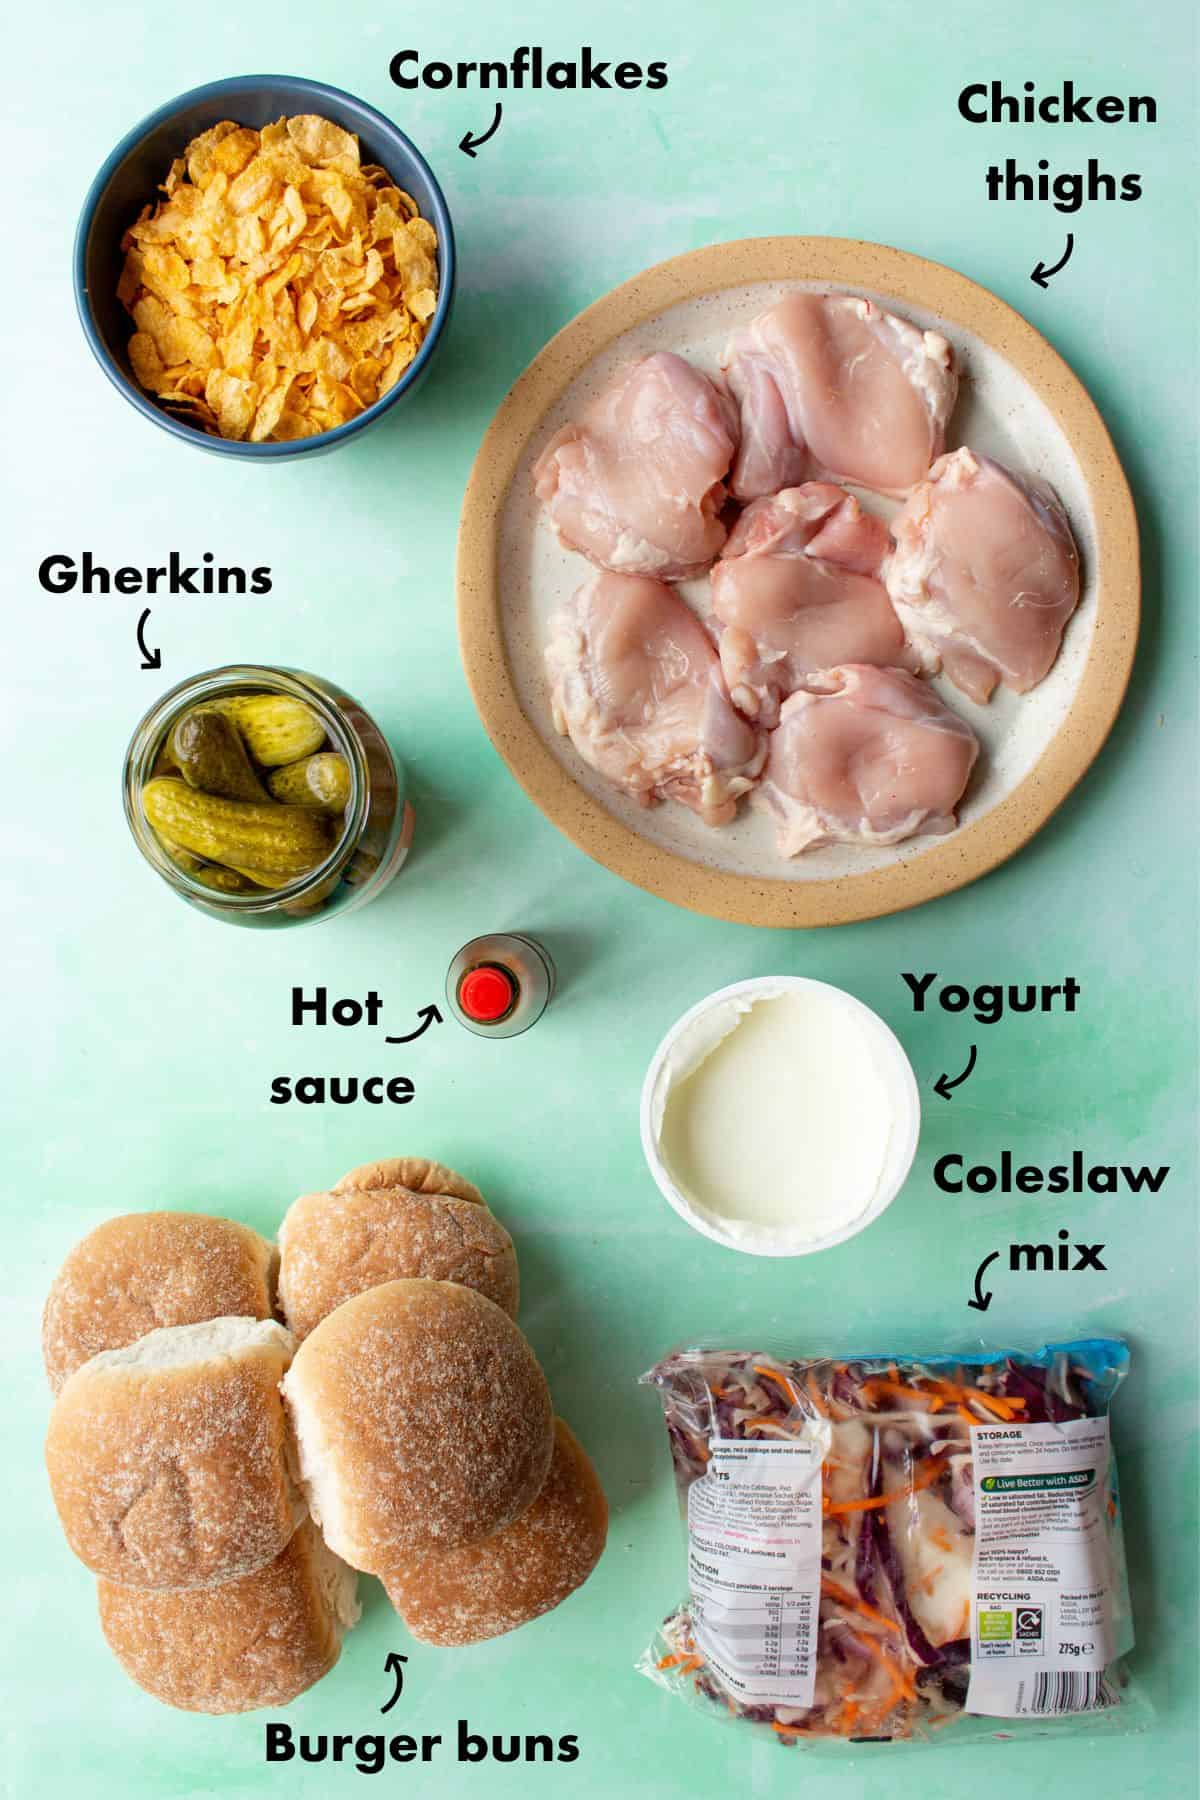 Ingredients to make the spicy chicken sandwich; cornflakes, chicken thighs, gherkins, hot sauce, yogurt and coleslaw.